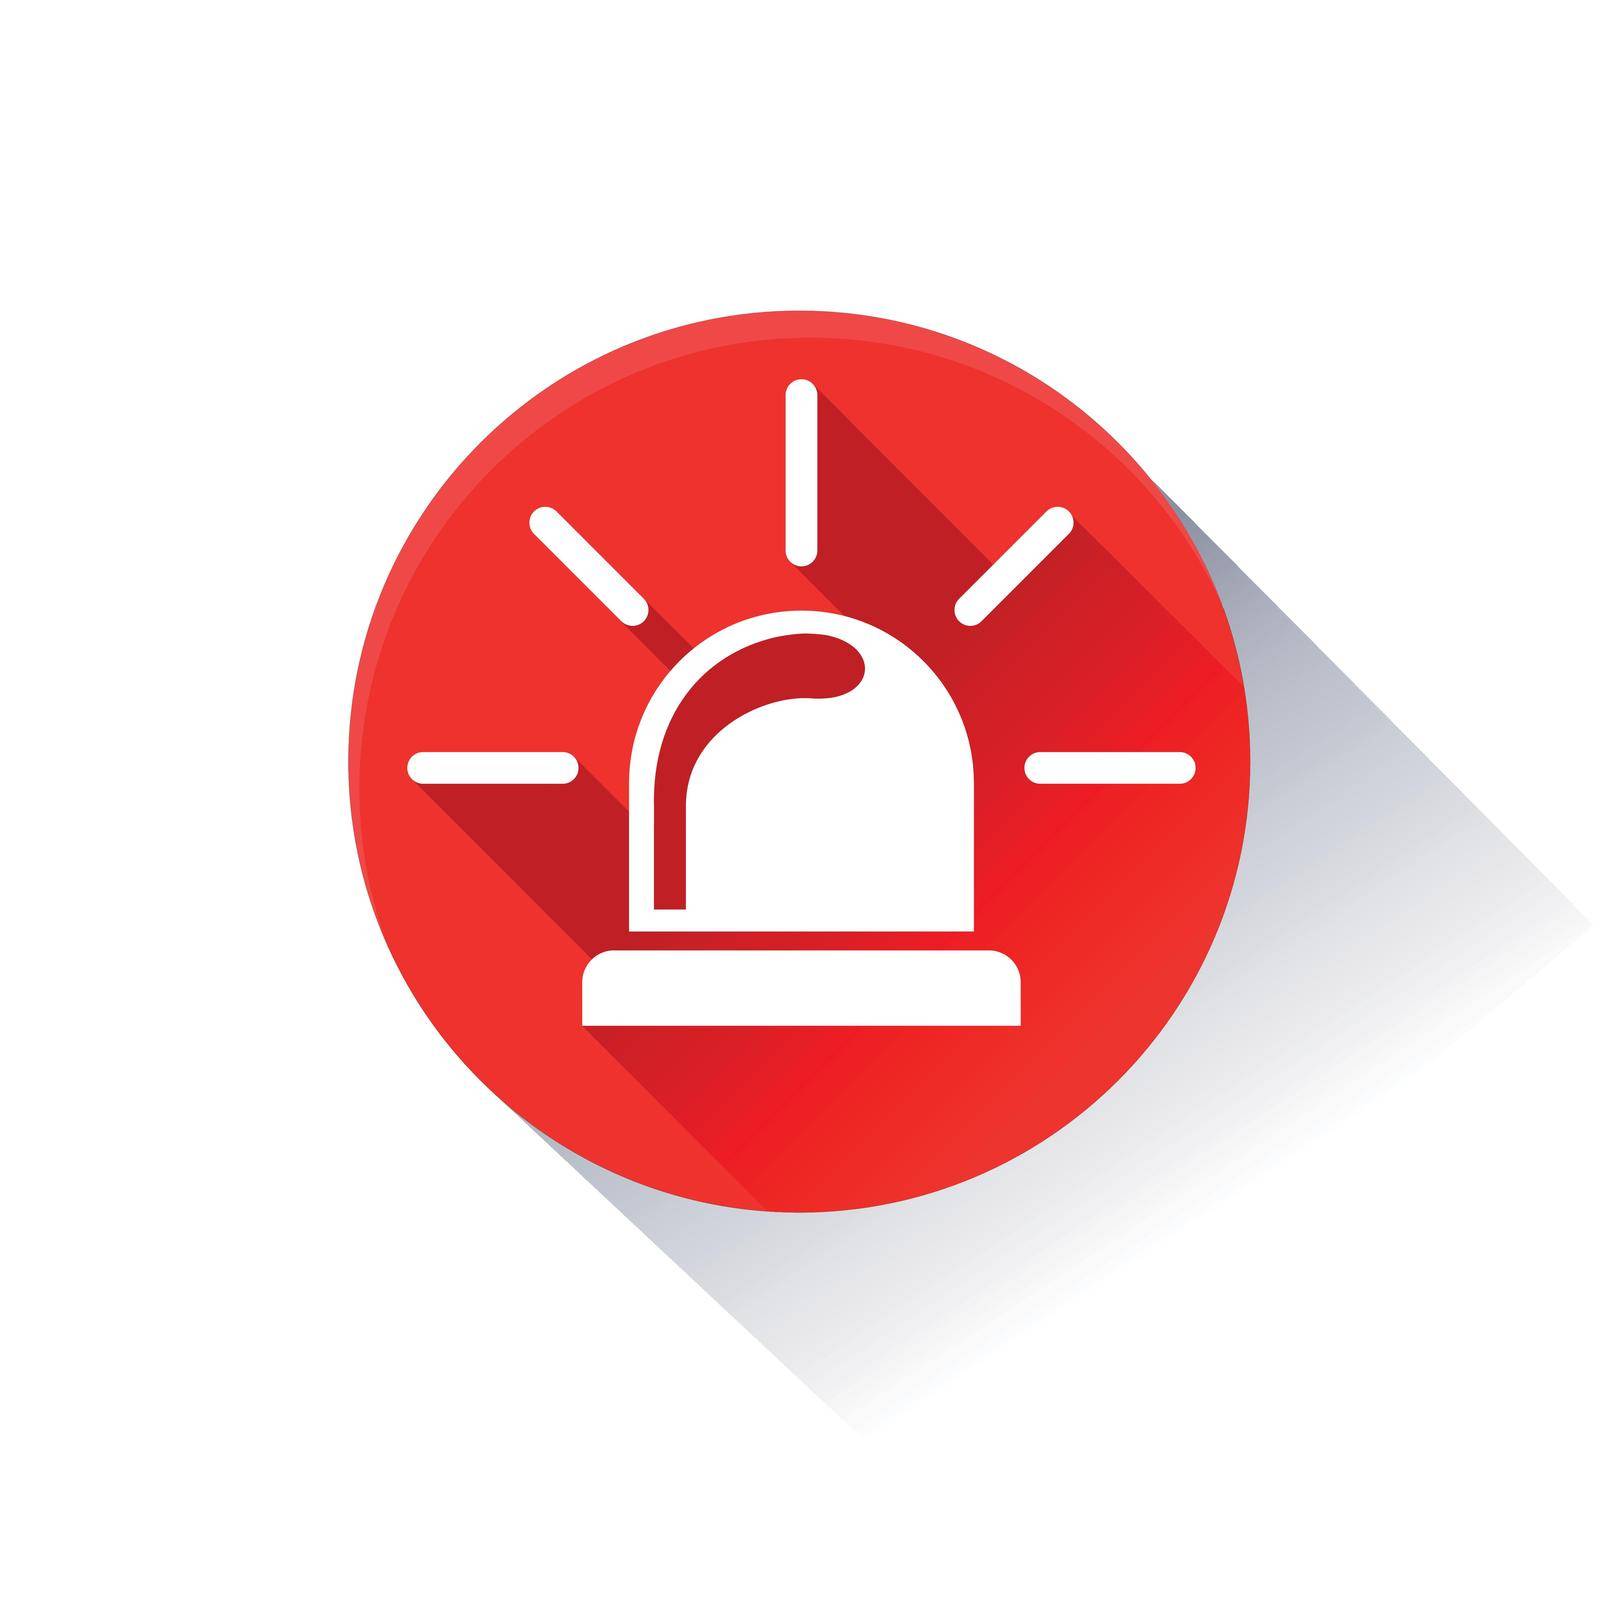 Illustration of alarm icon on white background